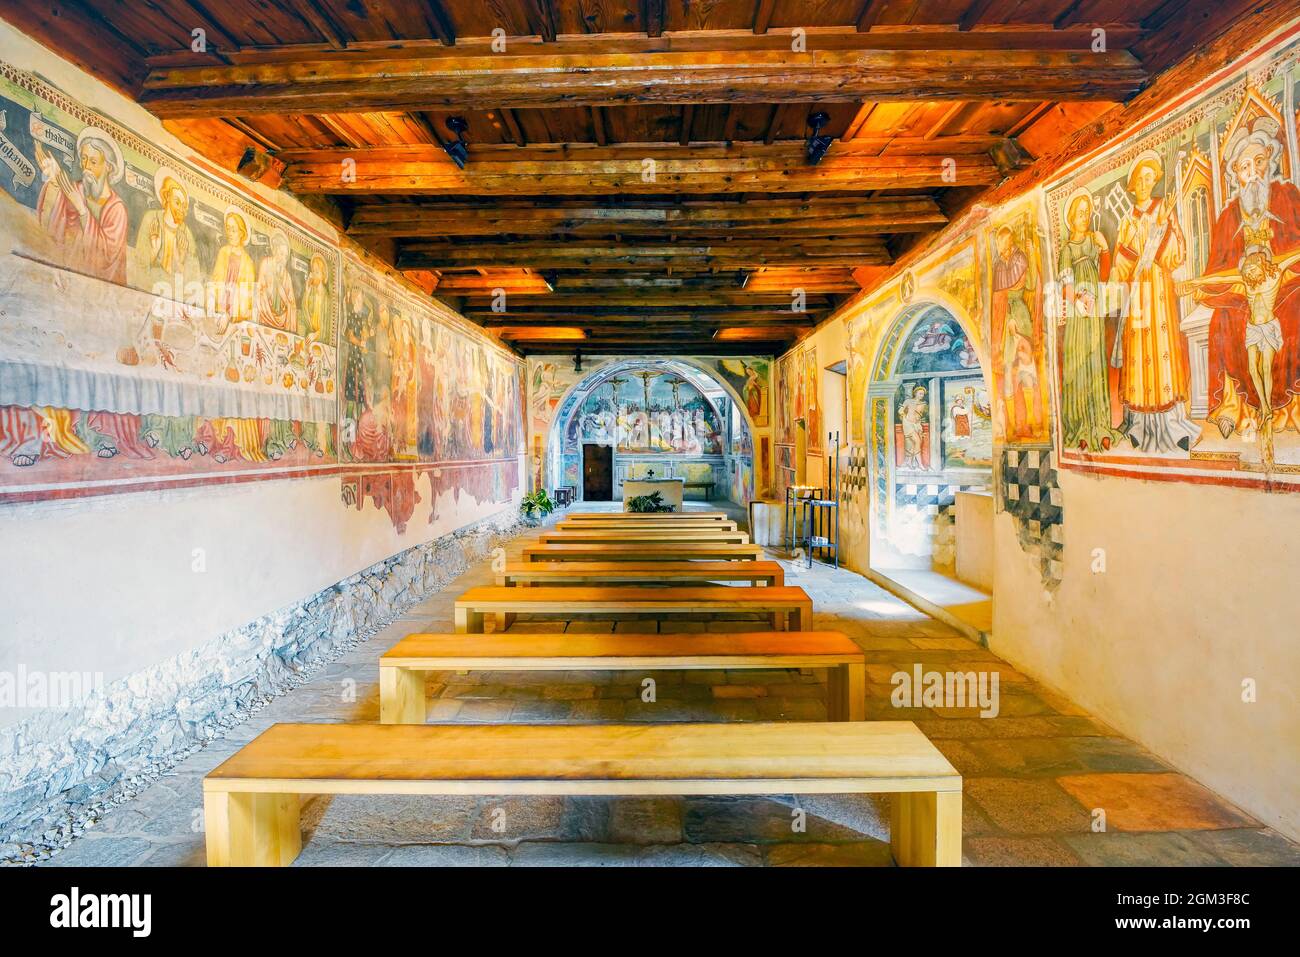 Das Innere der romanischen Kirche San Bernardo, die Wandmalereien stammen aus dem XV. Bis Anfang des XVII. Jahrhunderts. Monte Carasso, Schweiz. Stockfoto